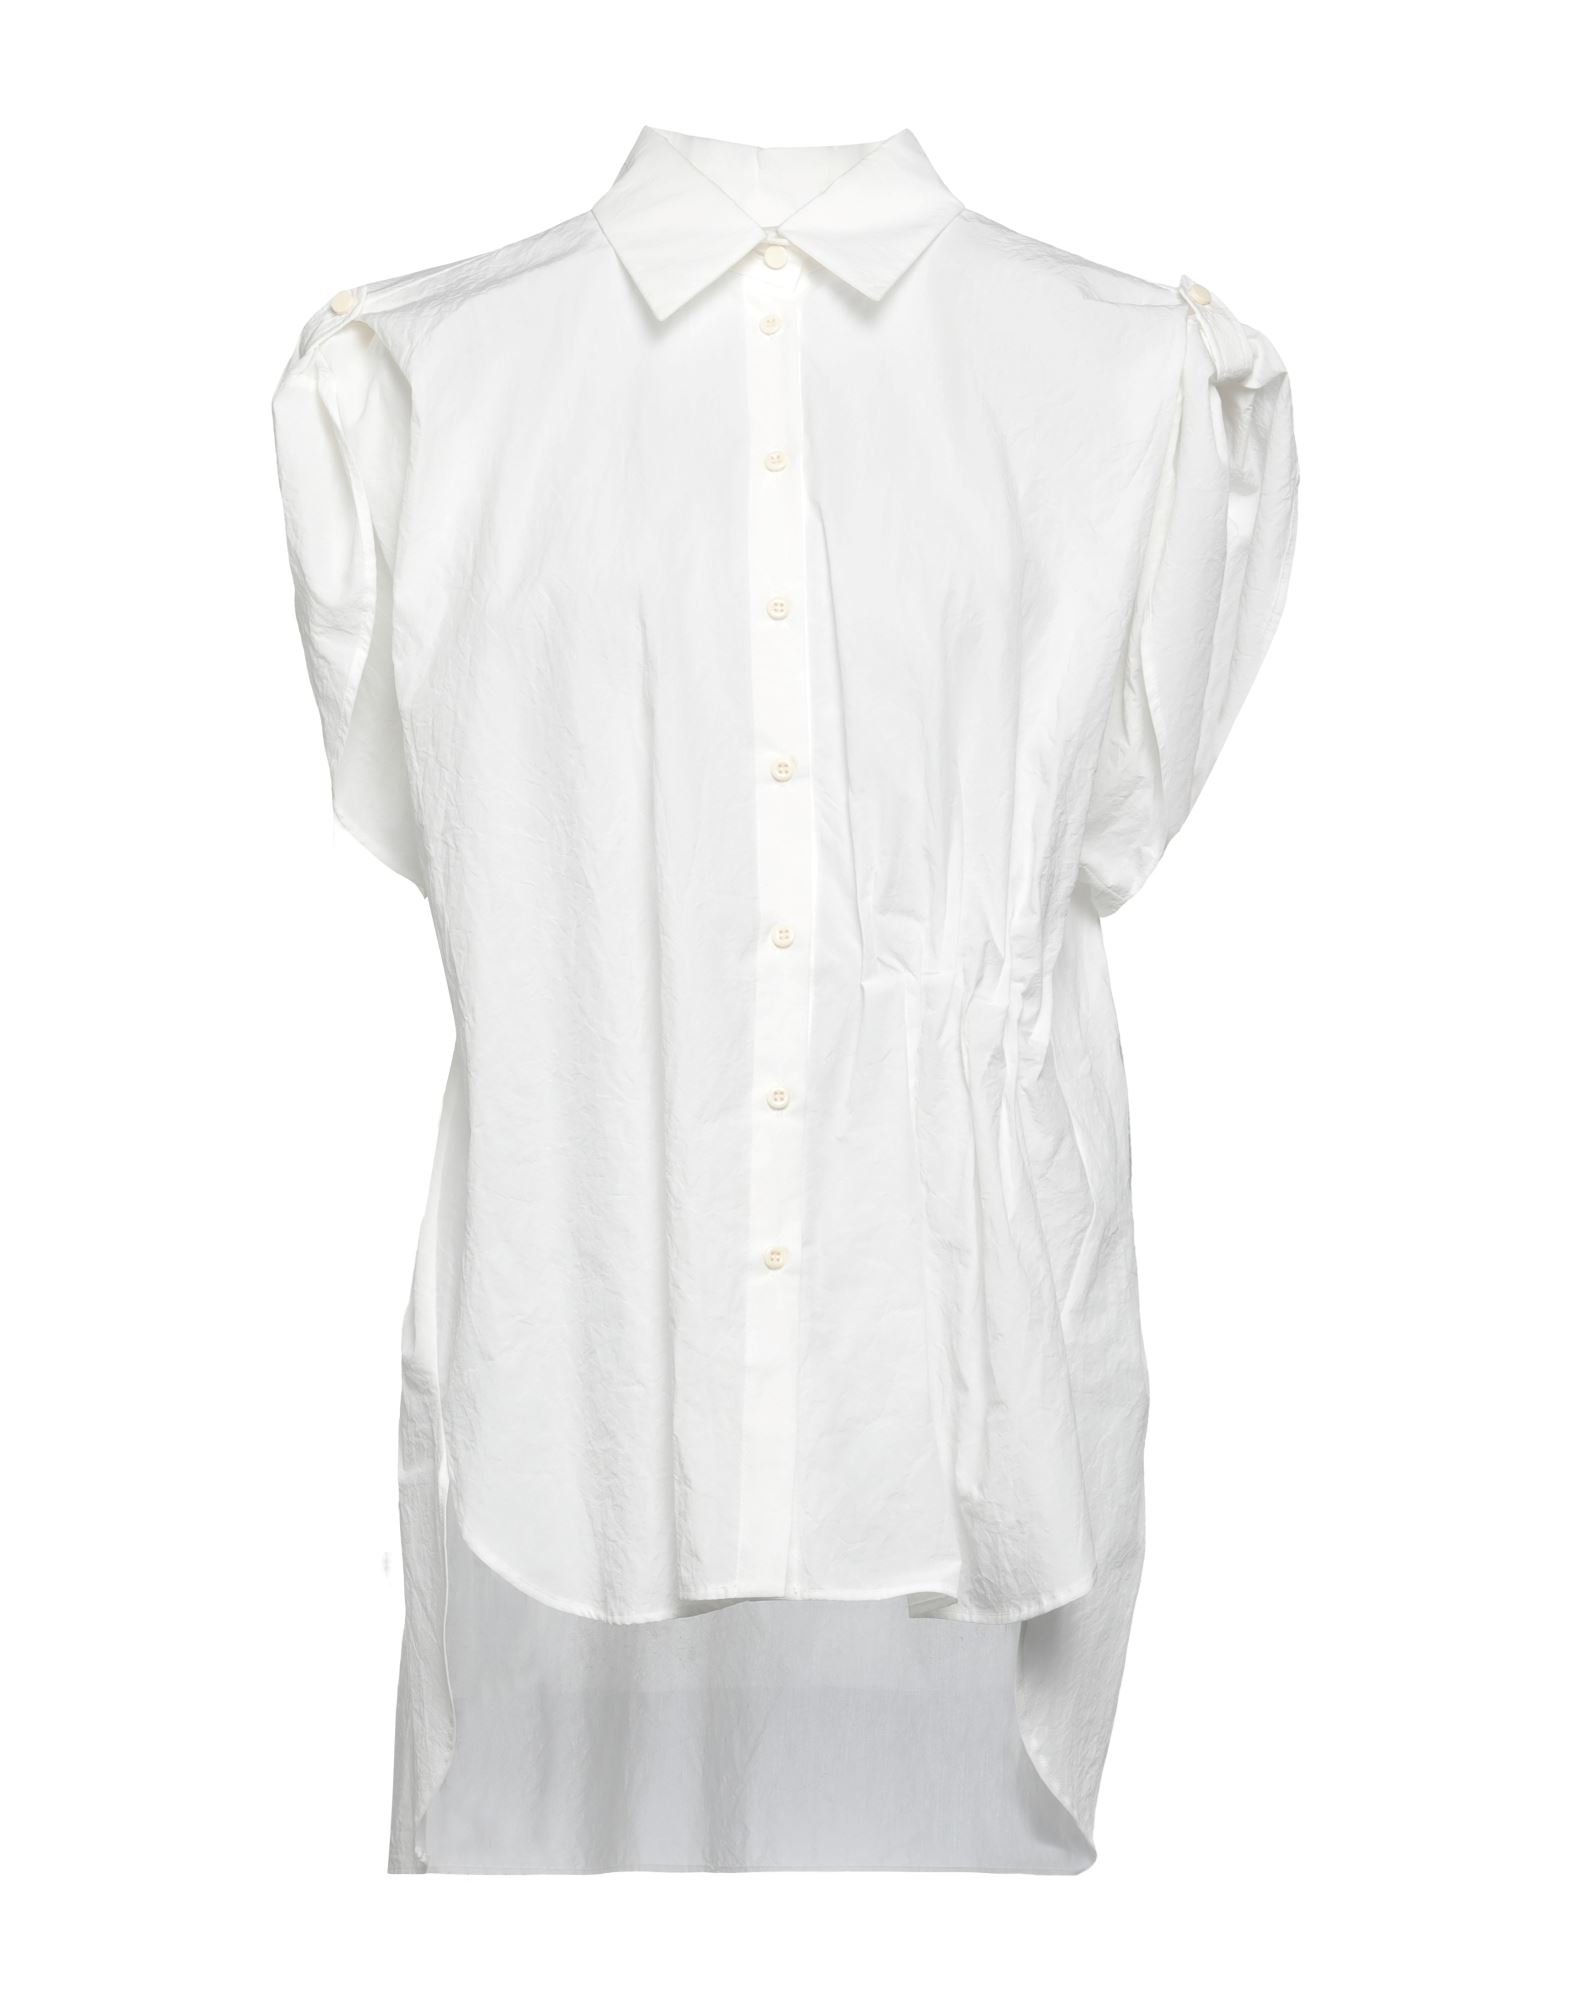 Alysi Shirts In White